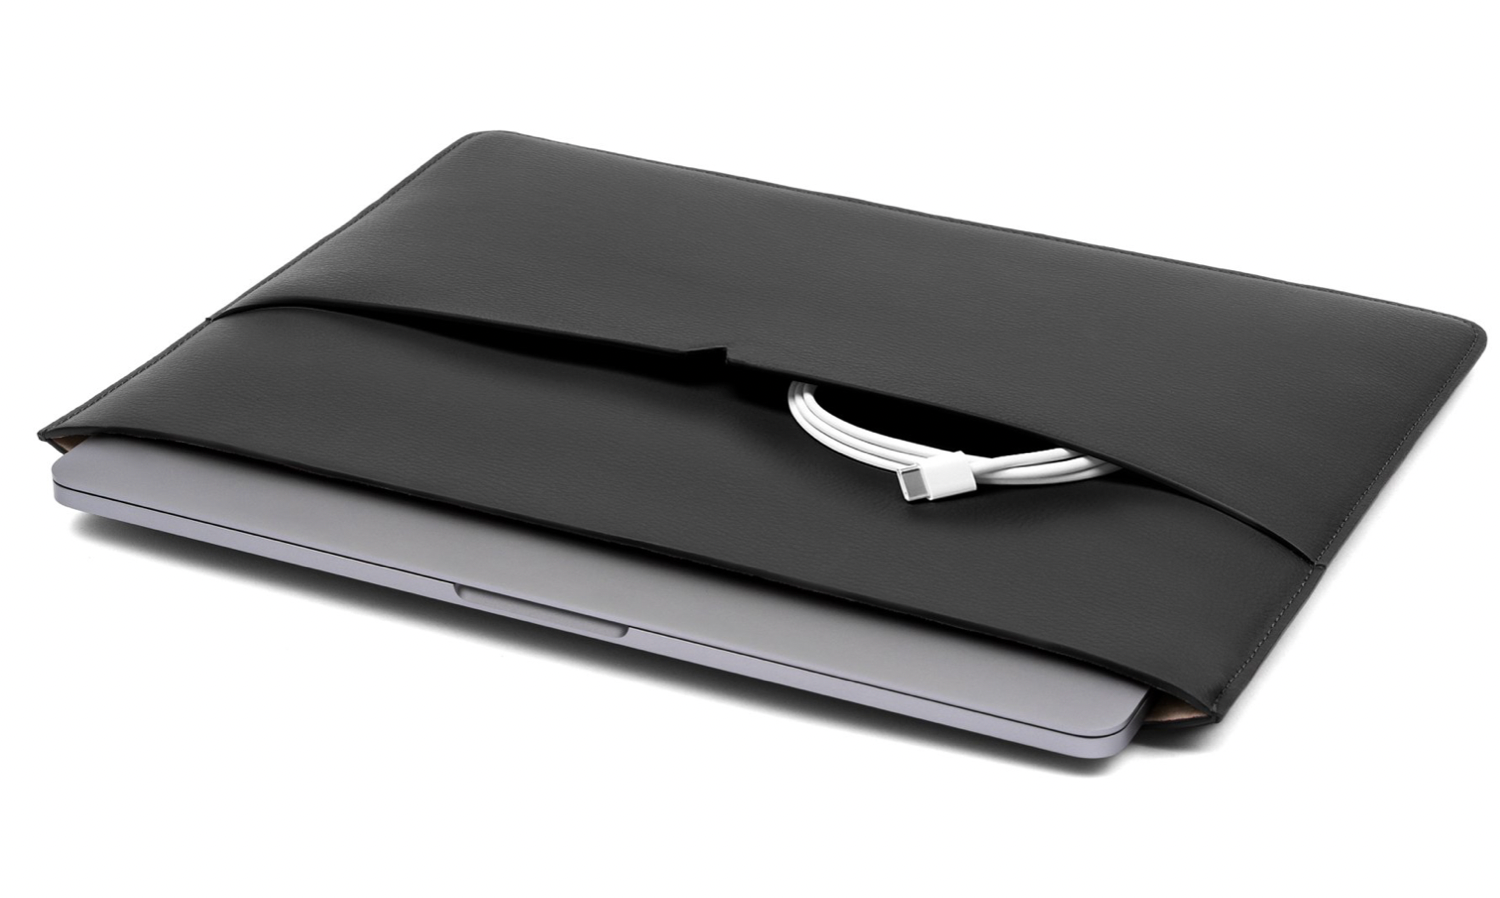 von Holzhausen black 13 inch macbook case